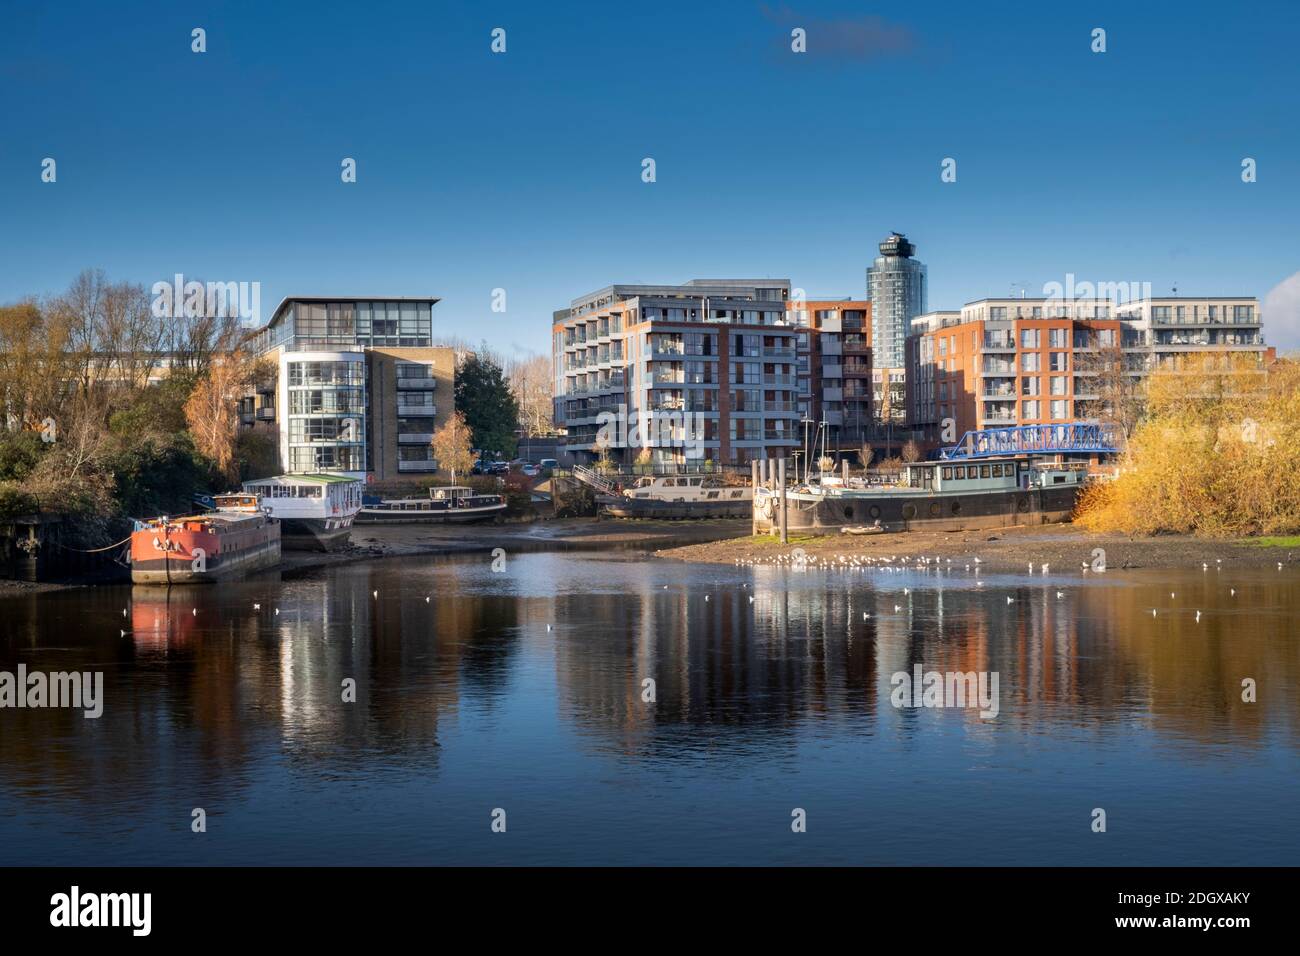 London, Hounslow, Wohnhäuser am Brentford Dock, Mündung des Flusses Brent am Grand Union Canal und der Themse, Herbst, klarer blauer Himmel Stockfoto